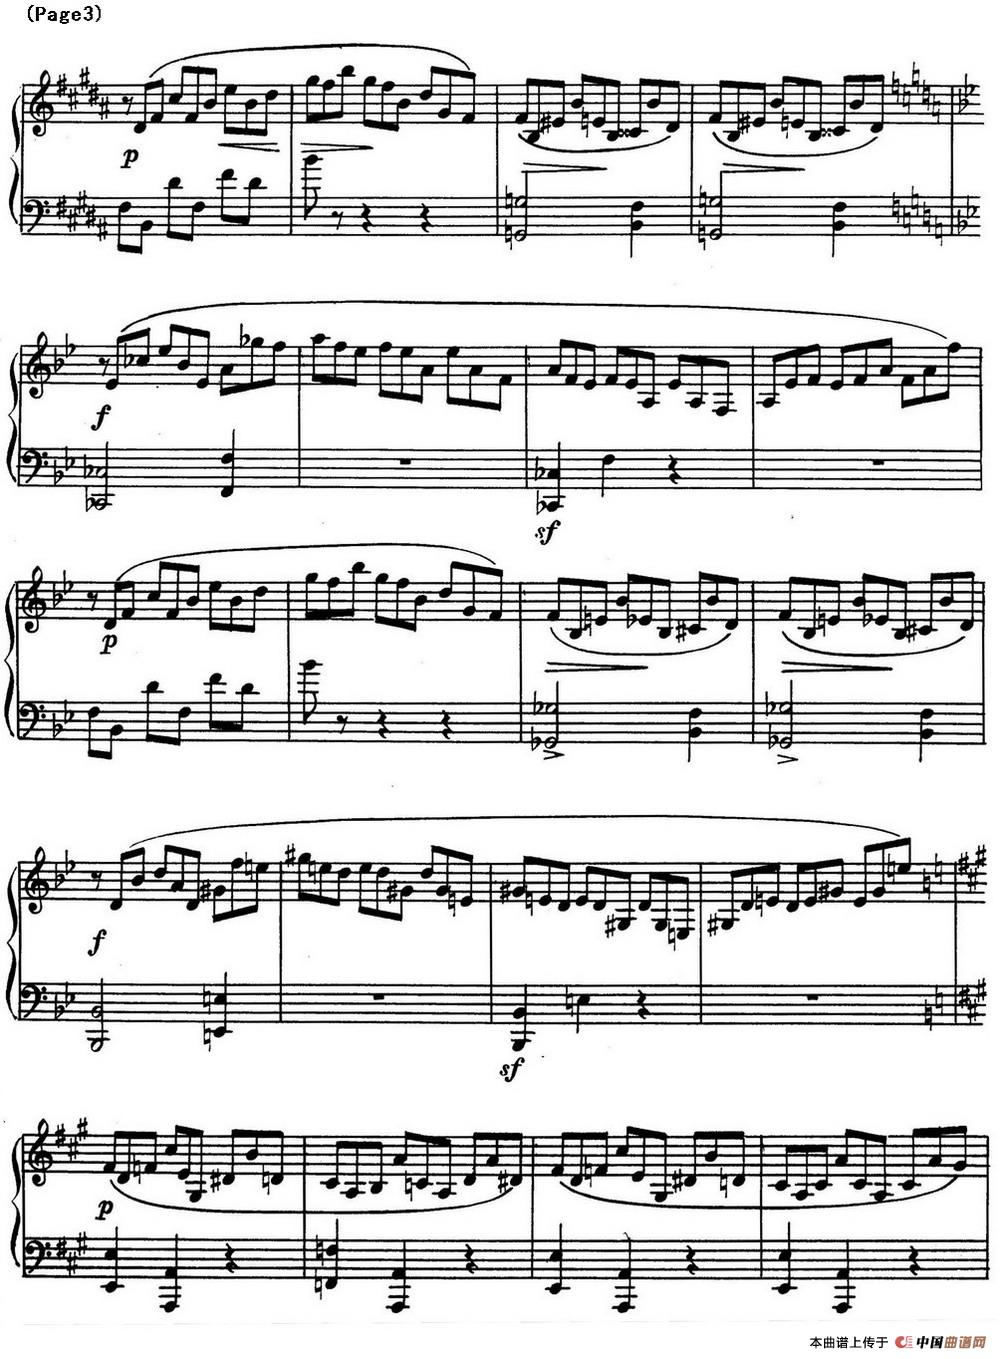 斯克里亚宾8首钢琴练习曲 Op42（No.1 Alexander Scriabin Etudes）(1)_Scriabin Etude Op.42 No.1_页面_3.jpg